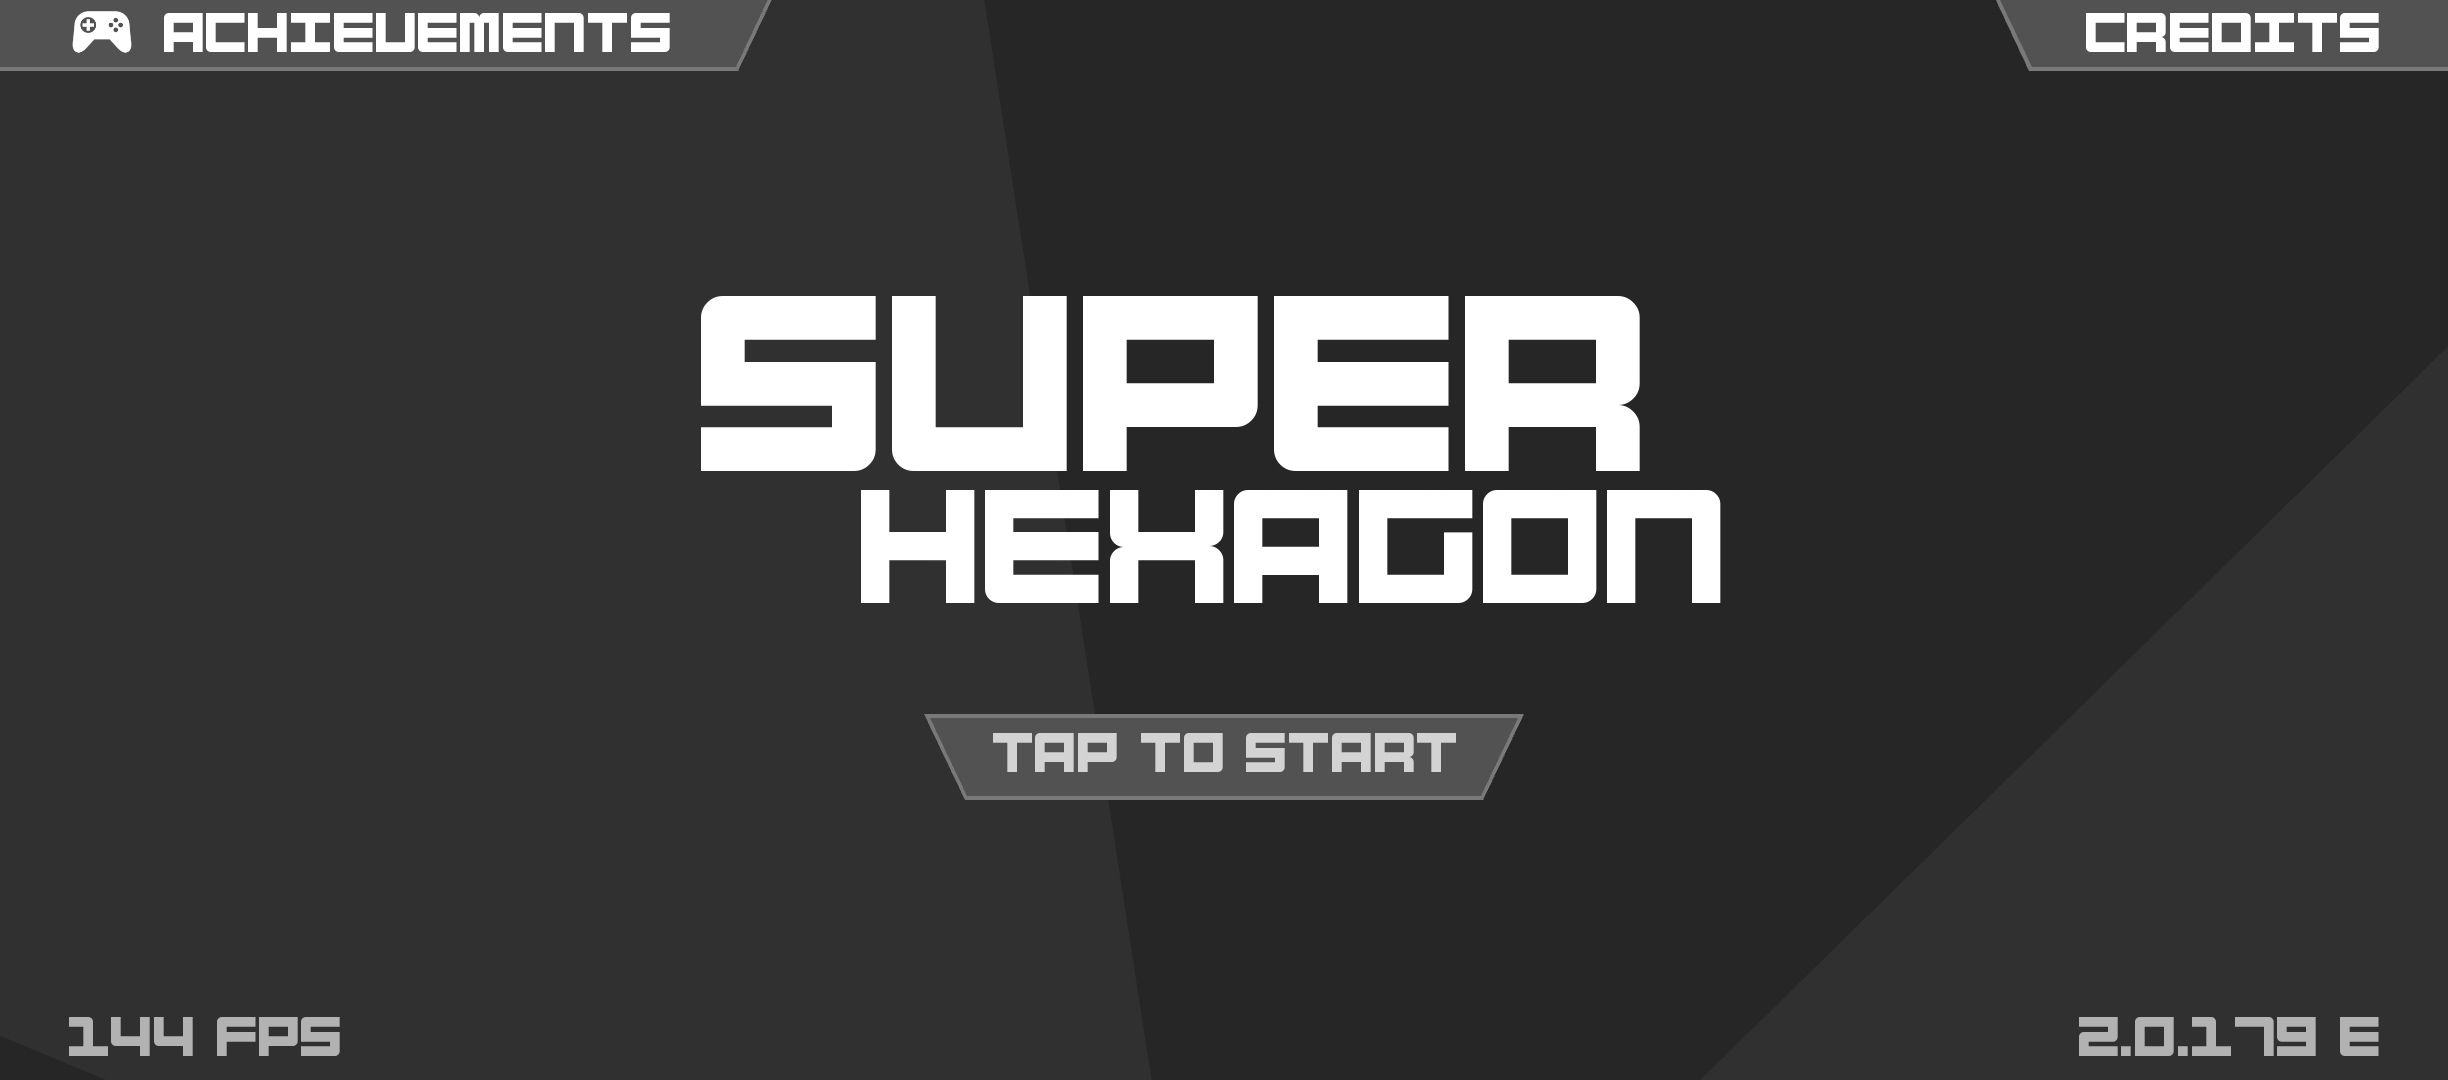 Super Hexagon update hero